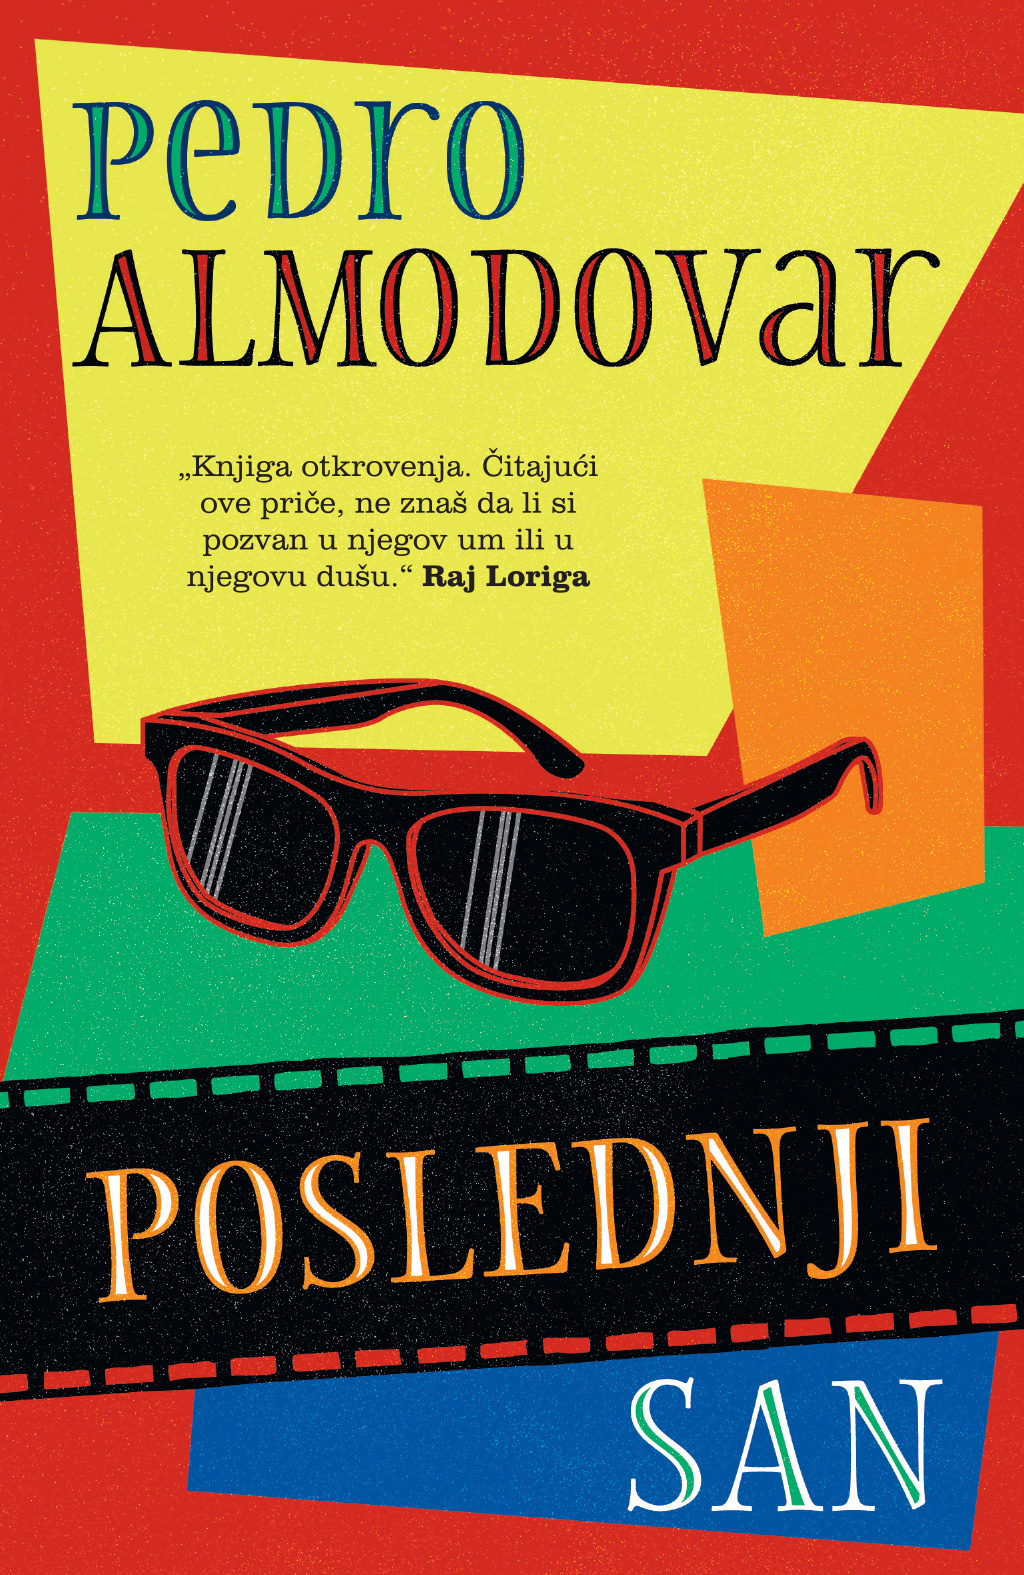 Autobiografija Pedra Almodovara „Poslednji san“ na srpskom jeziku u februaru